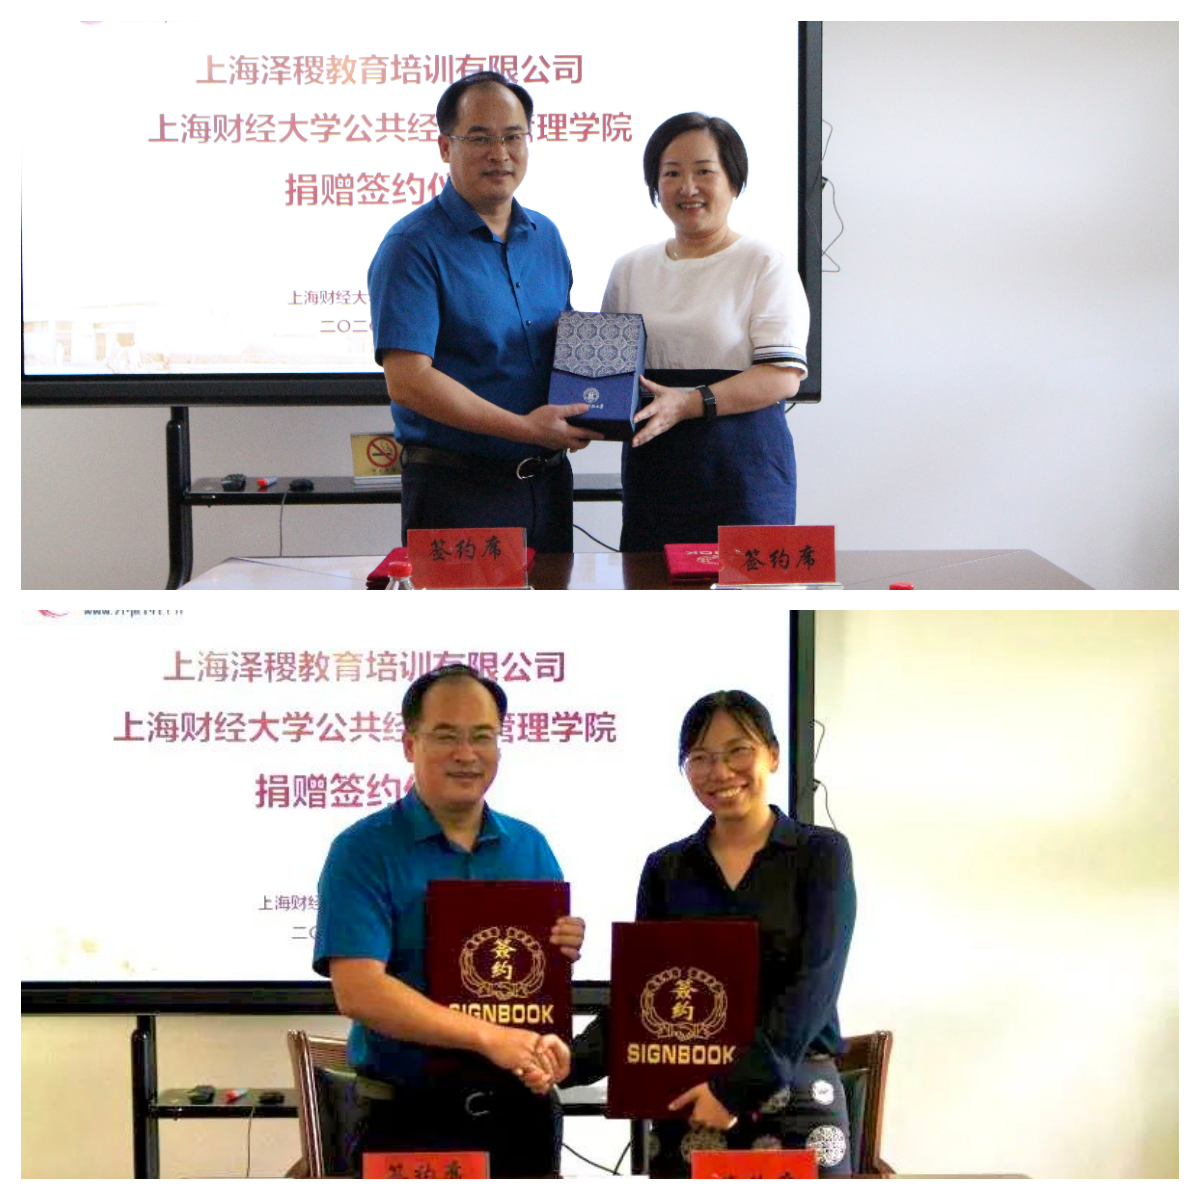 热烈祝贺上海财经大学公共经济与管理学院与泽稷教育捐赠签约仪式顺利举行